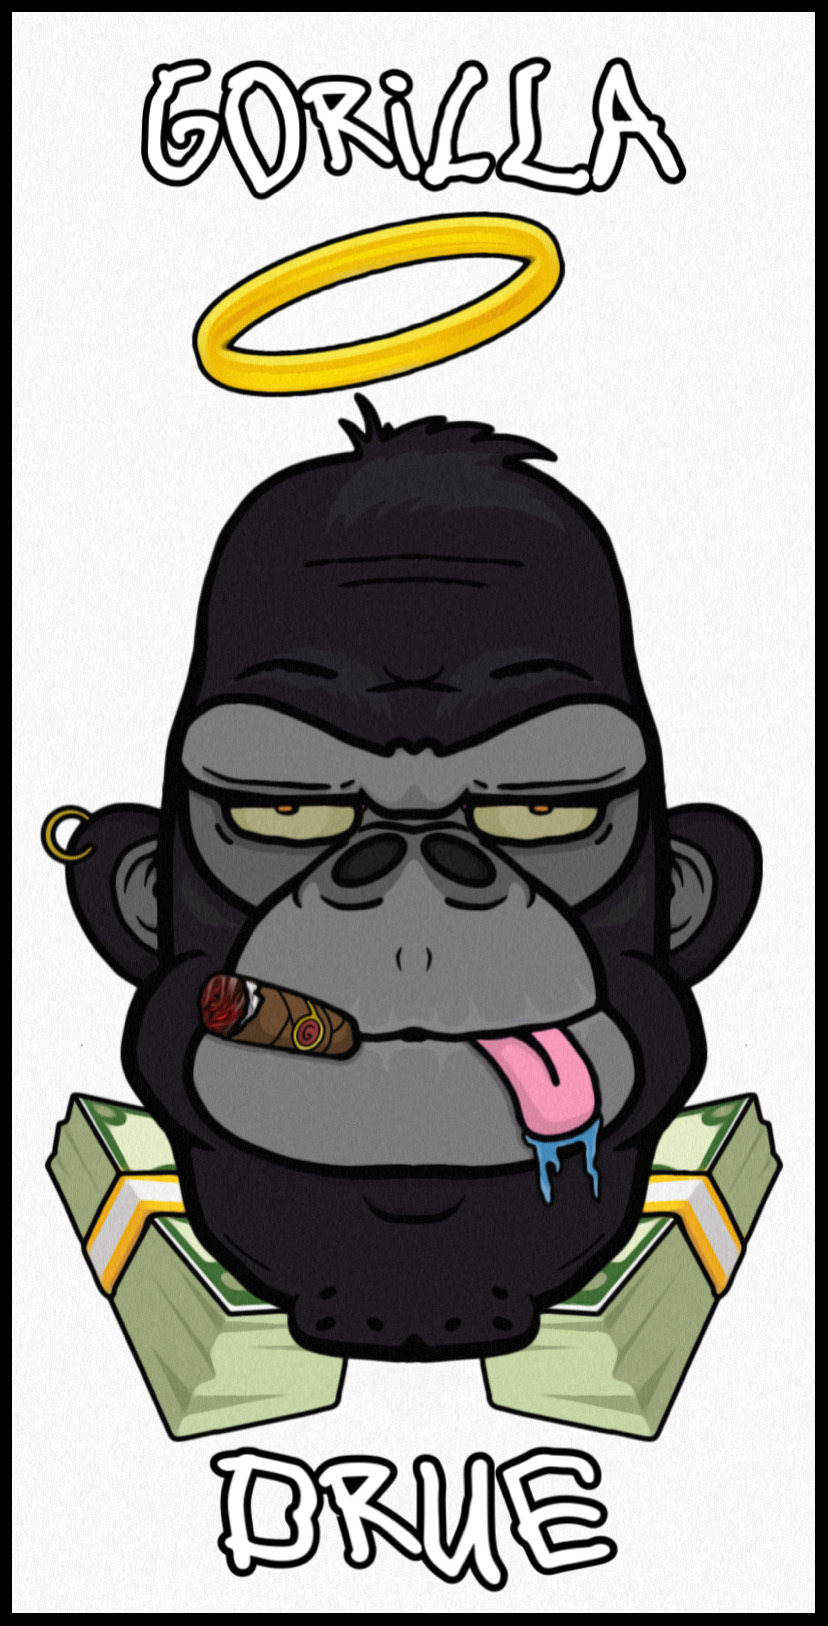 Gorilla Drue